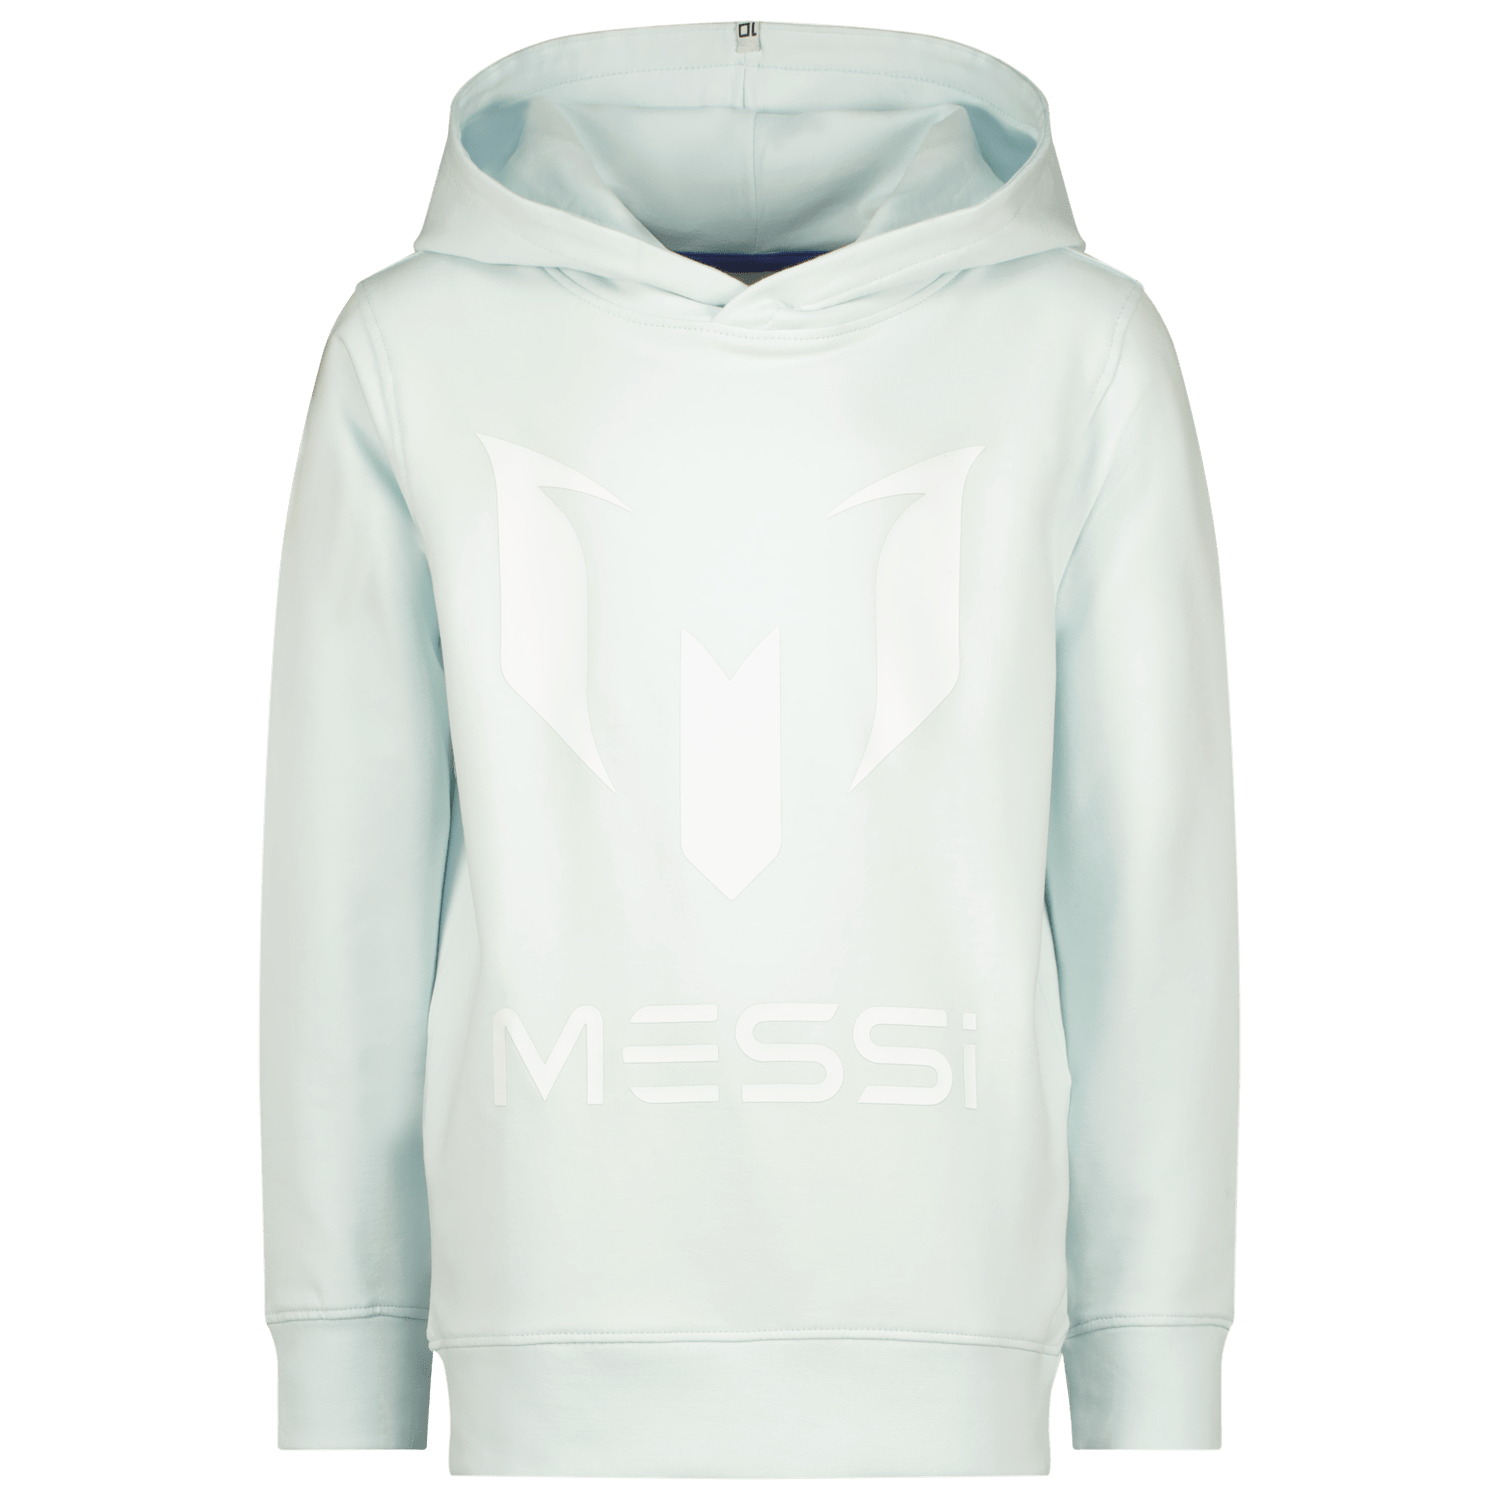 VINGINO x Messi hoodie met logo lichtblauw Sweater Logo 140